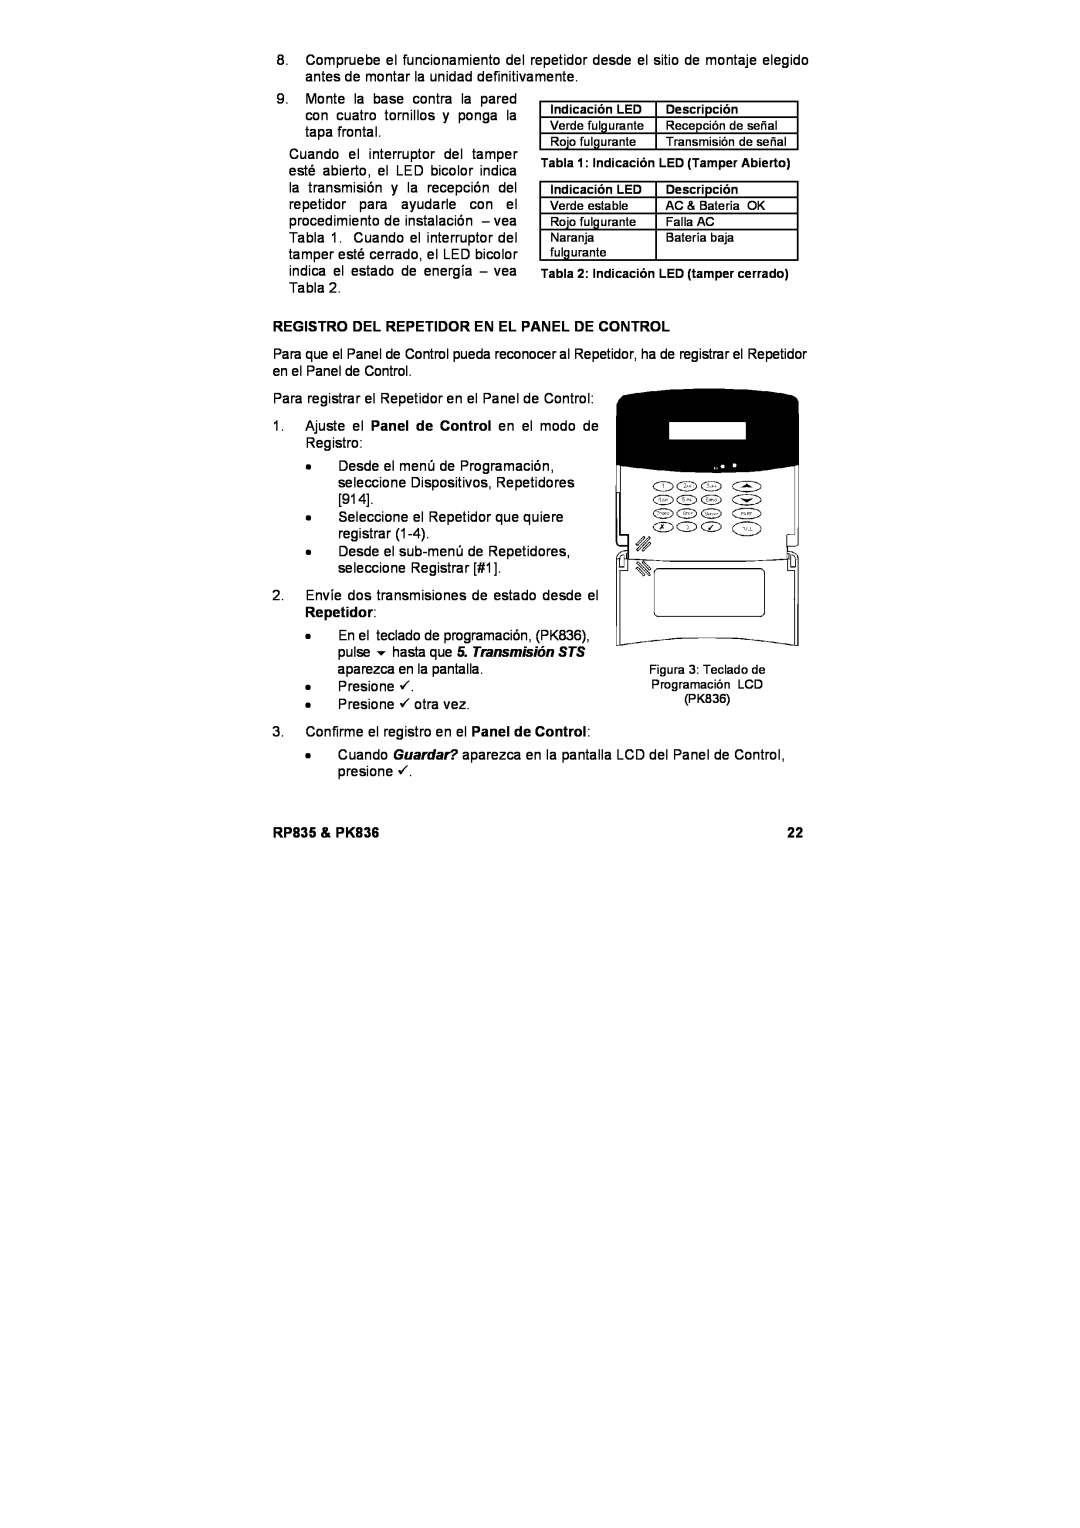 Marmitek user manual Registro Del Repetidor En El Panel De Control, RP835 & PK836 